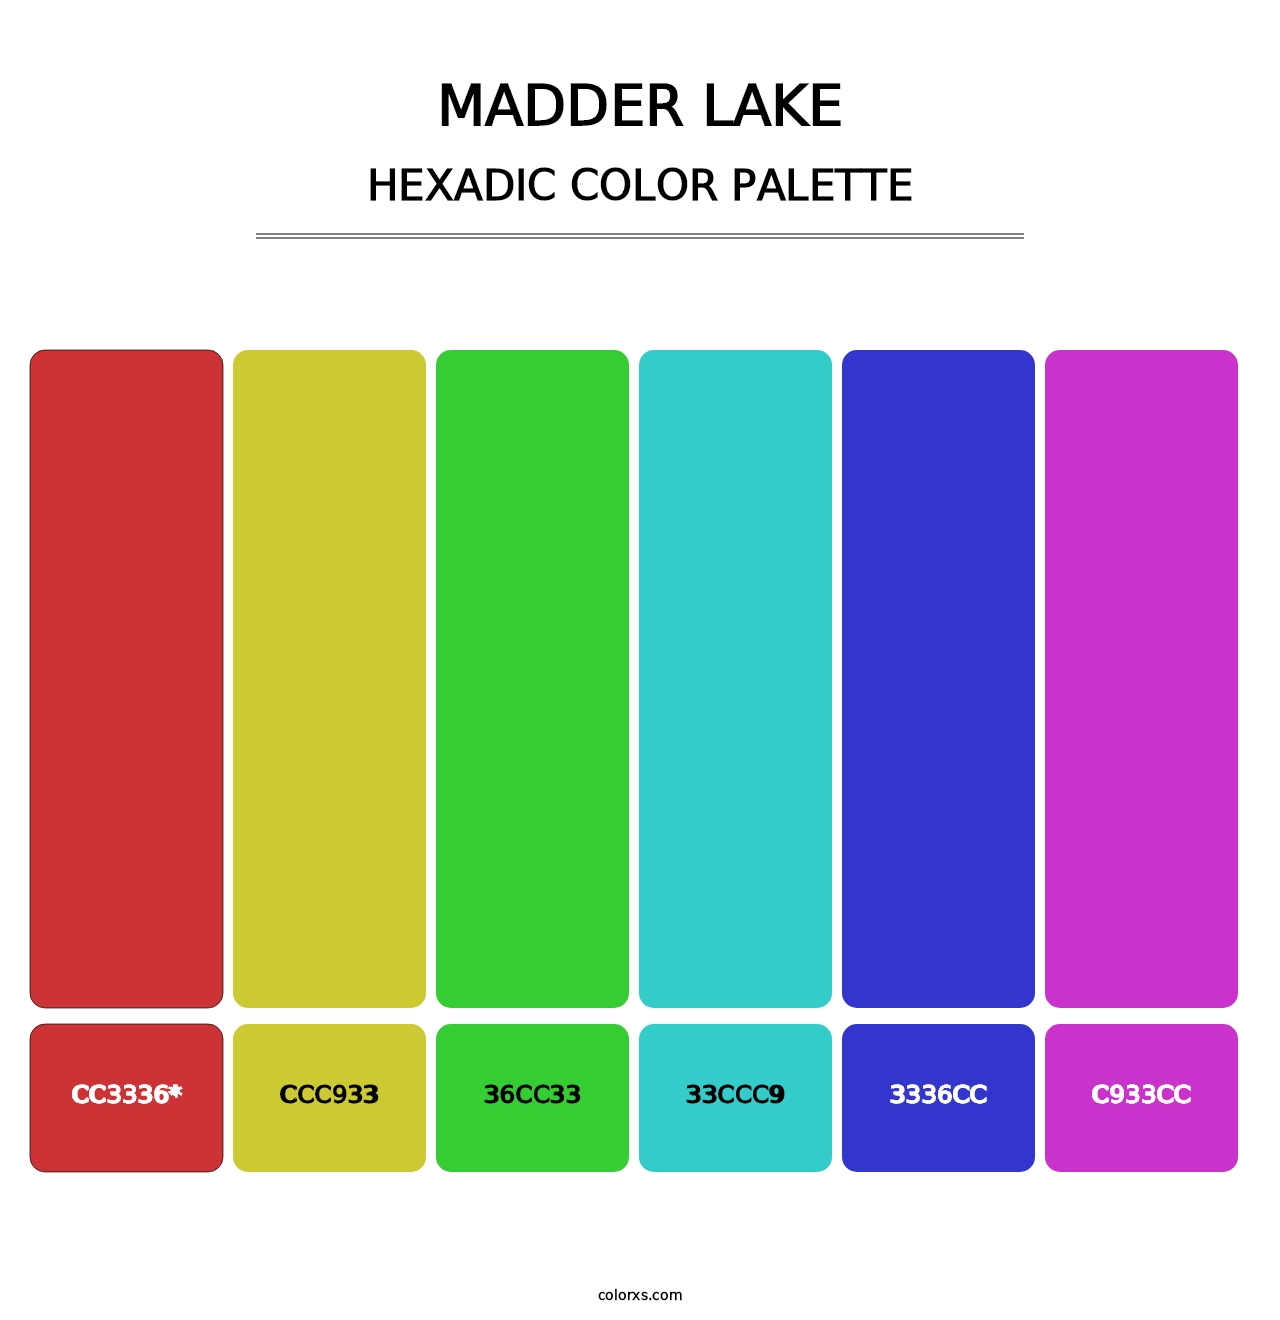 Madder Lake - Hexadic Color Palette